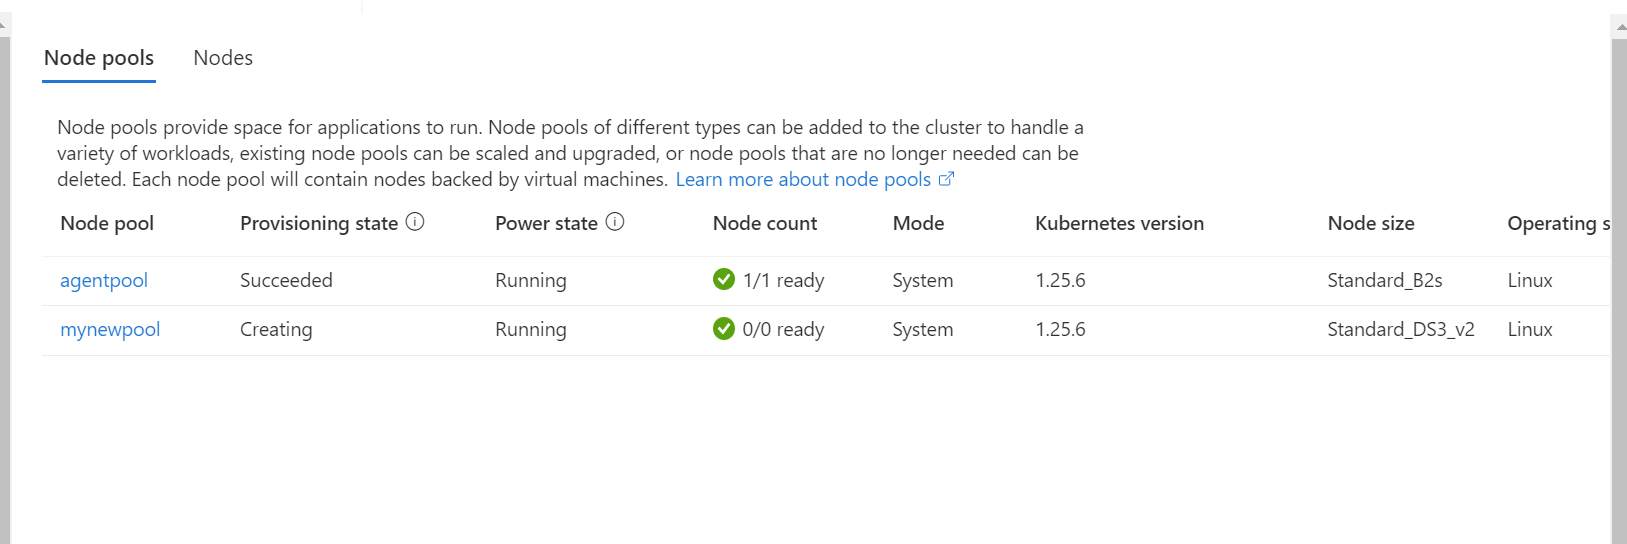 Azure Kubernetes Service (AKS) upgrade your node pools